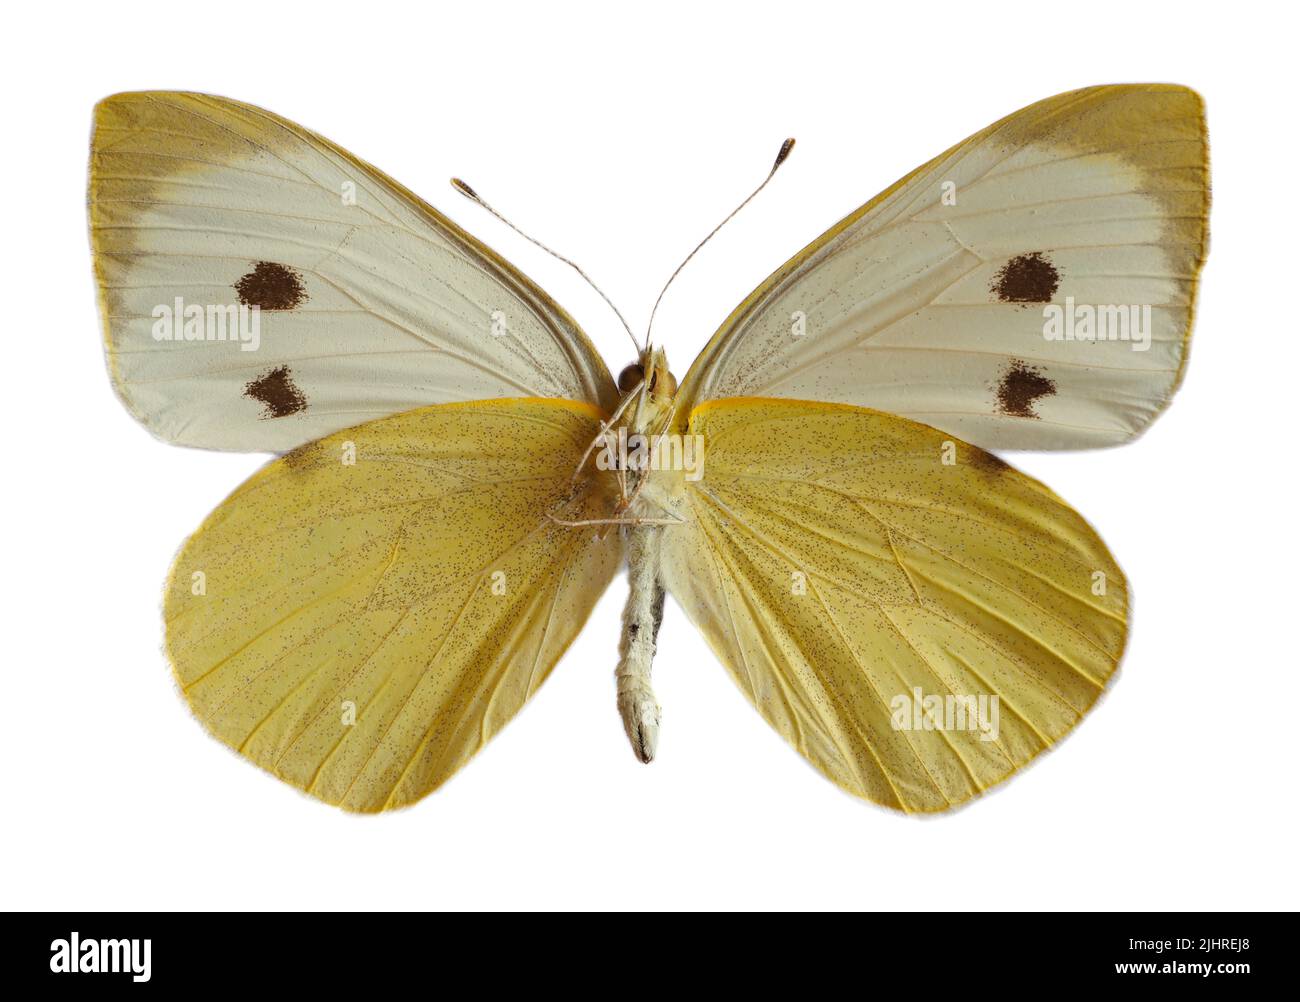 Mariposa blanca grande femenina, también llamada Mariposa de la col o Blanca de la col (Pieris brassicae), alas abiertas y vistas desde abajo aisladas en la espalda blanca Foto de stock